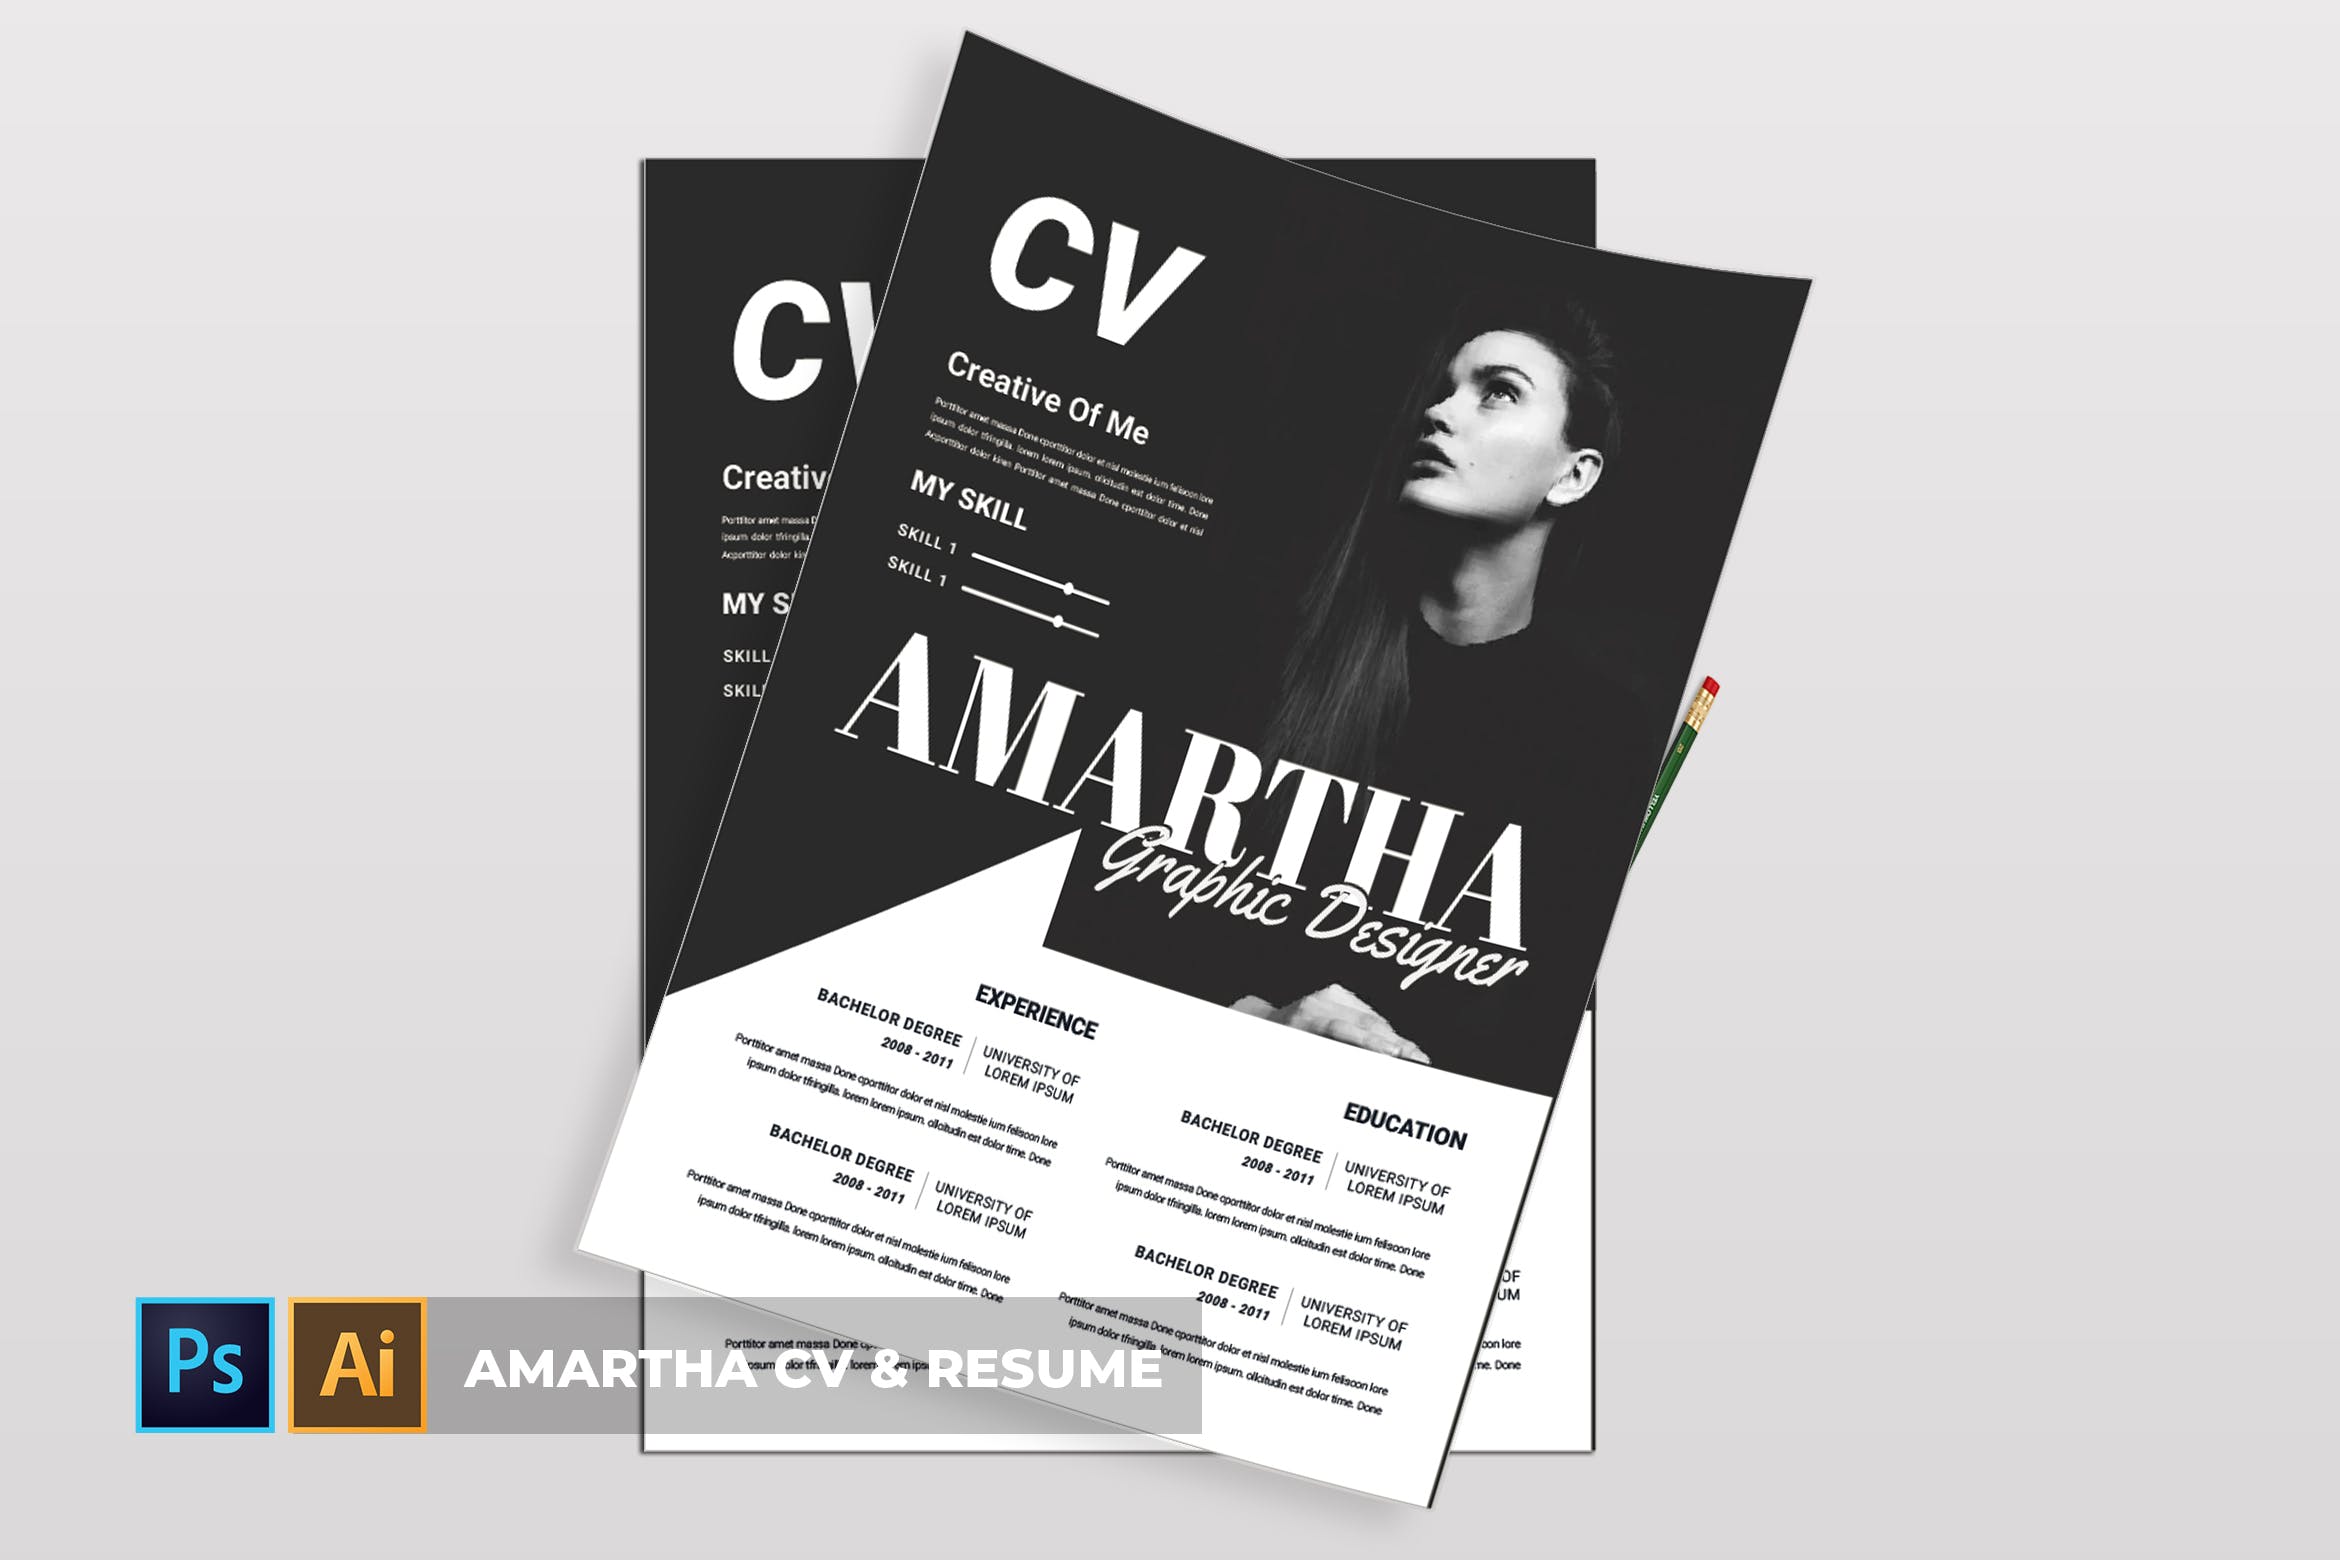 图形设计师/模特/时装设计师个人电子简历模板 Amartha | CV & Resume插图